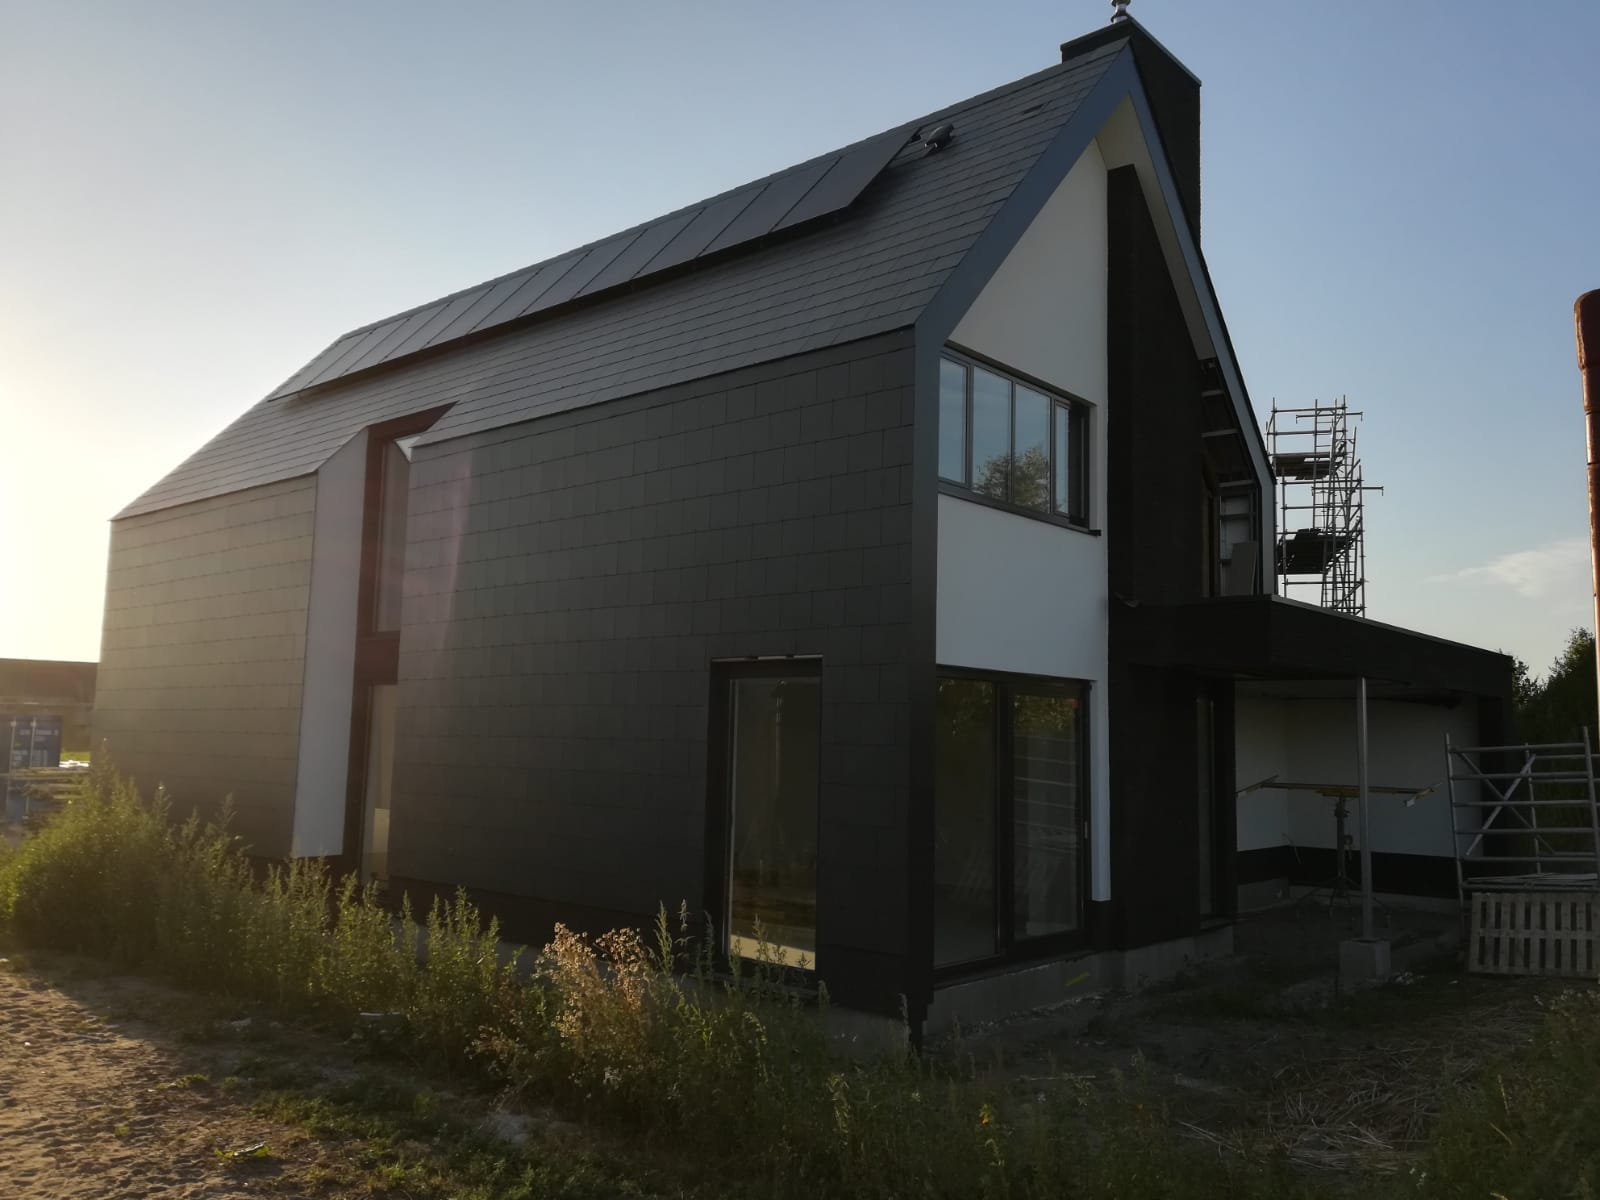 Studio voor Bouwkunst - Moderne strakke huiselijke woning in wit stuc zwarte steen eternit pannen - Harderweide, Harderwijk